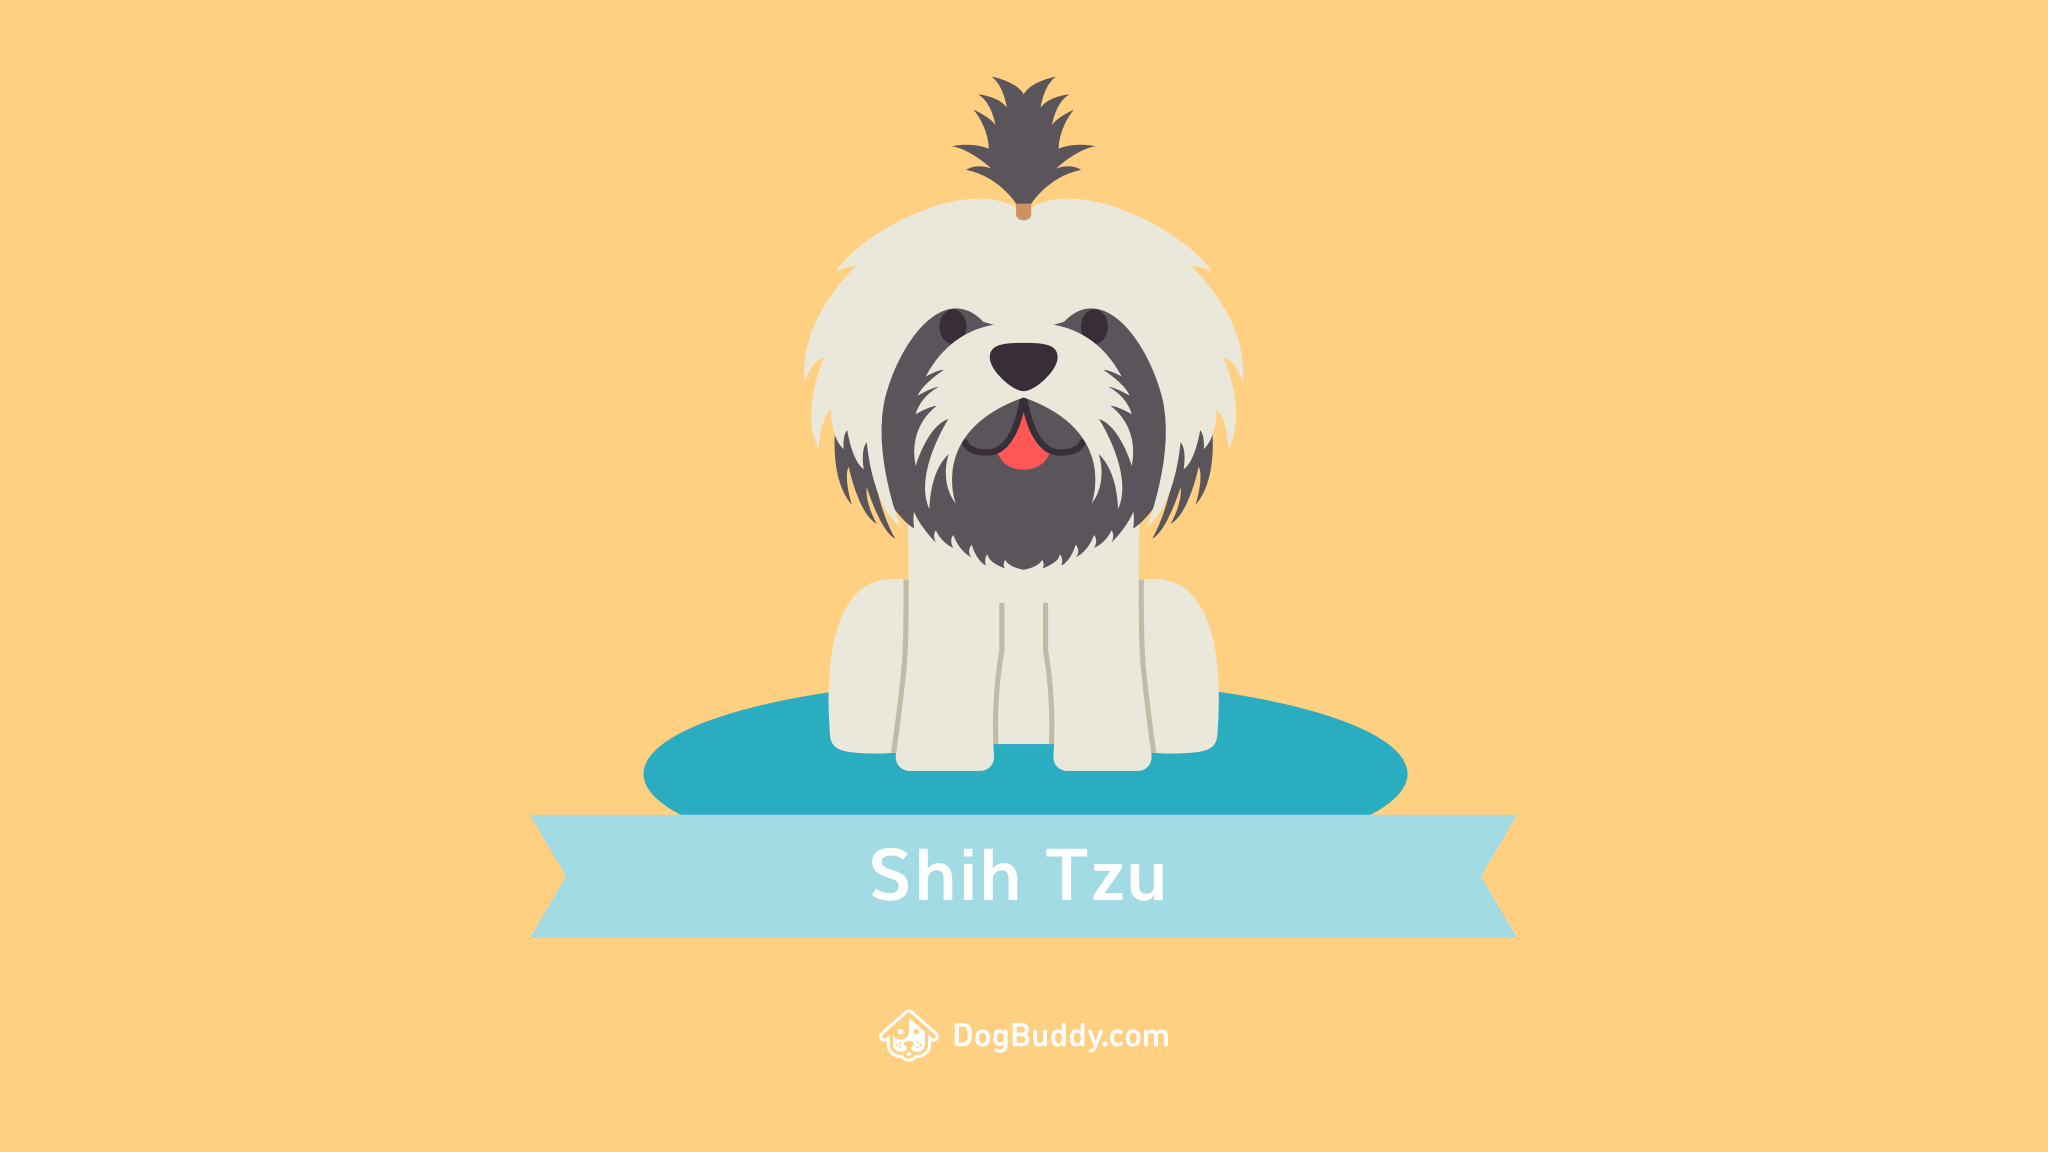 Shih Tzu Wallpapers - Top Free Shih Tzu Backgrounds - WallpaperAccess